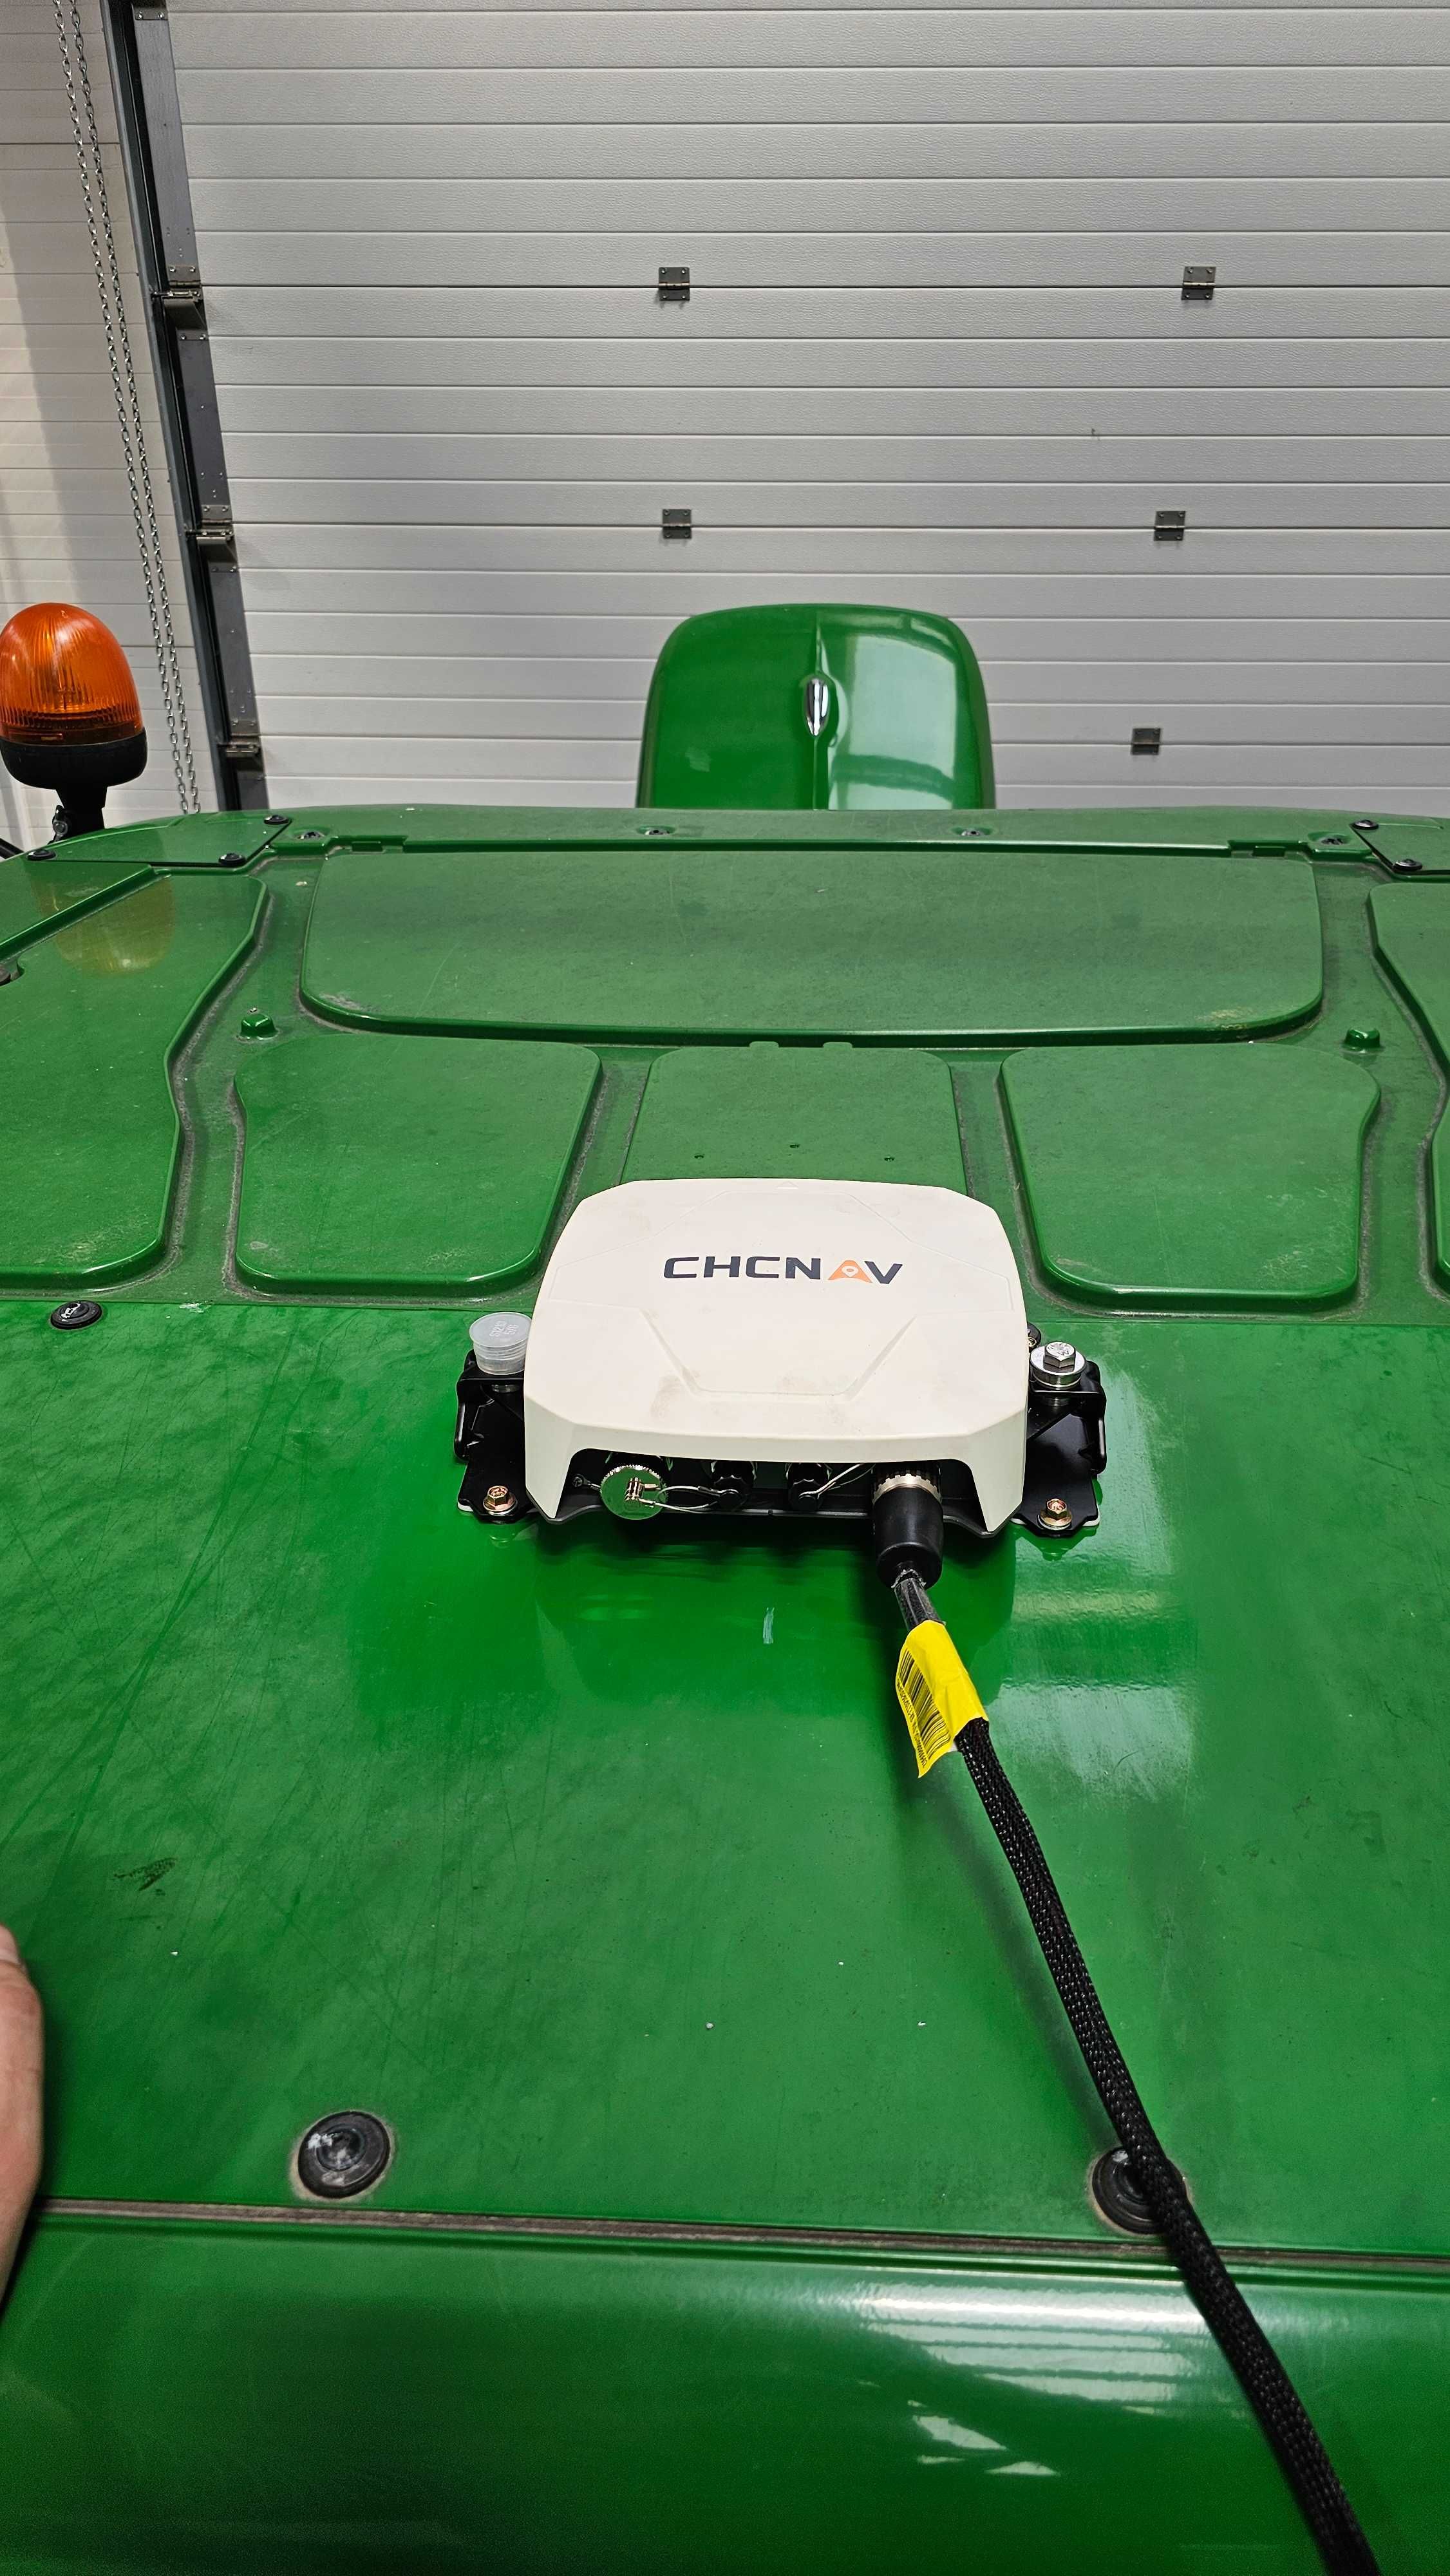 Nawigacja rolnicza CHCNAV sprzedaż i montaż RTK 2,5cm GPS